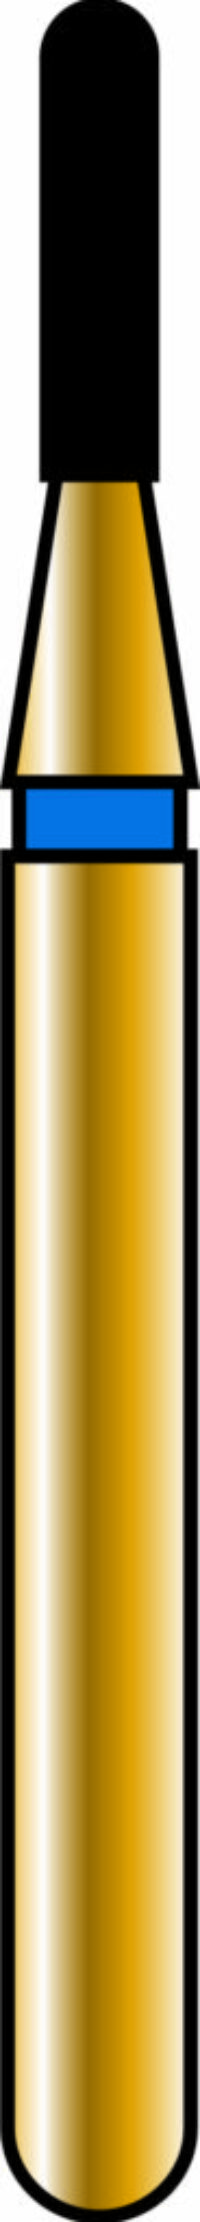 Round End Cylinder 10-4mm Gold Diamond Bur